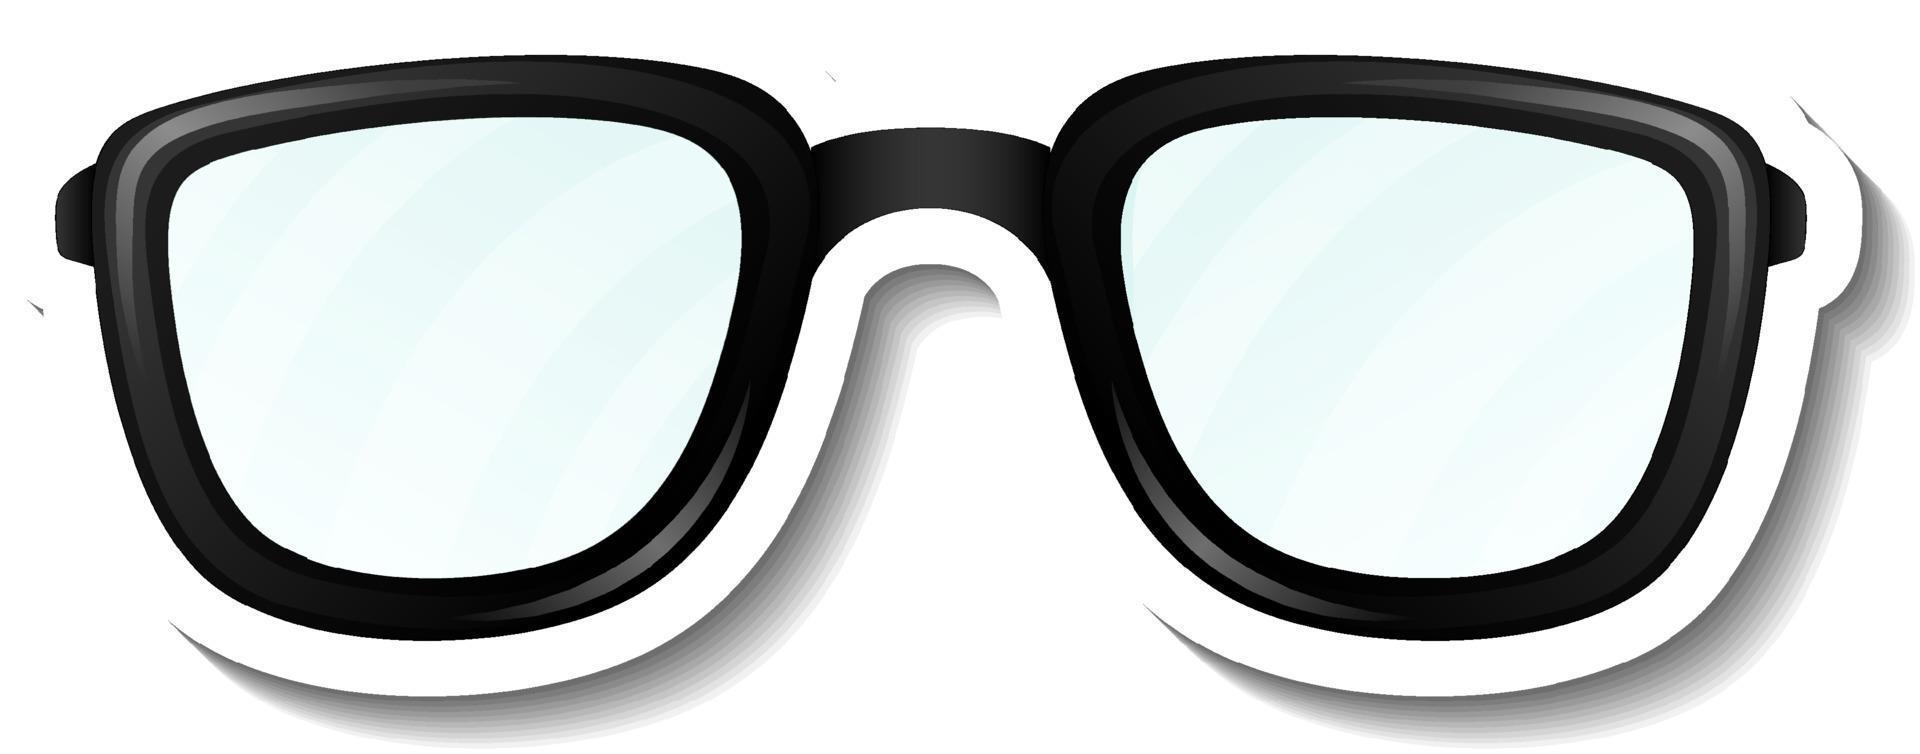 um modelo de adesivo com óculos vetor